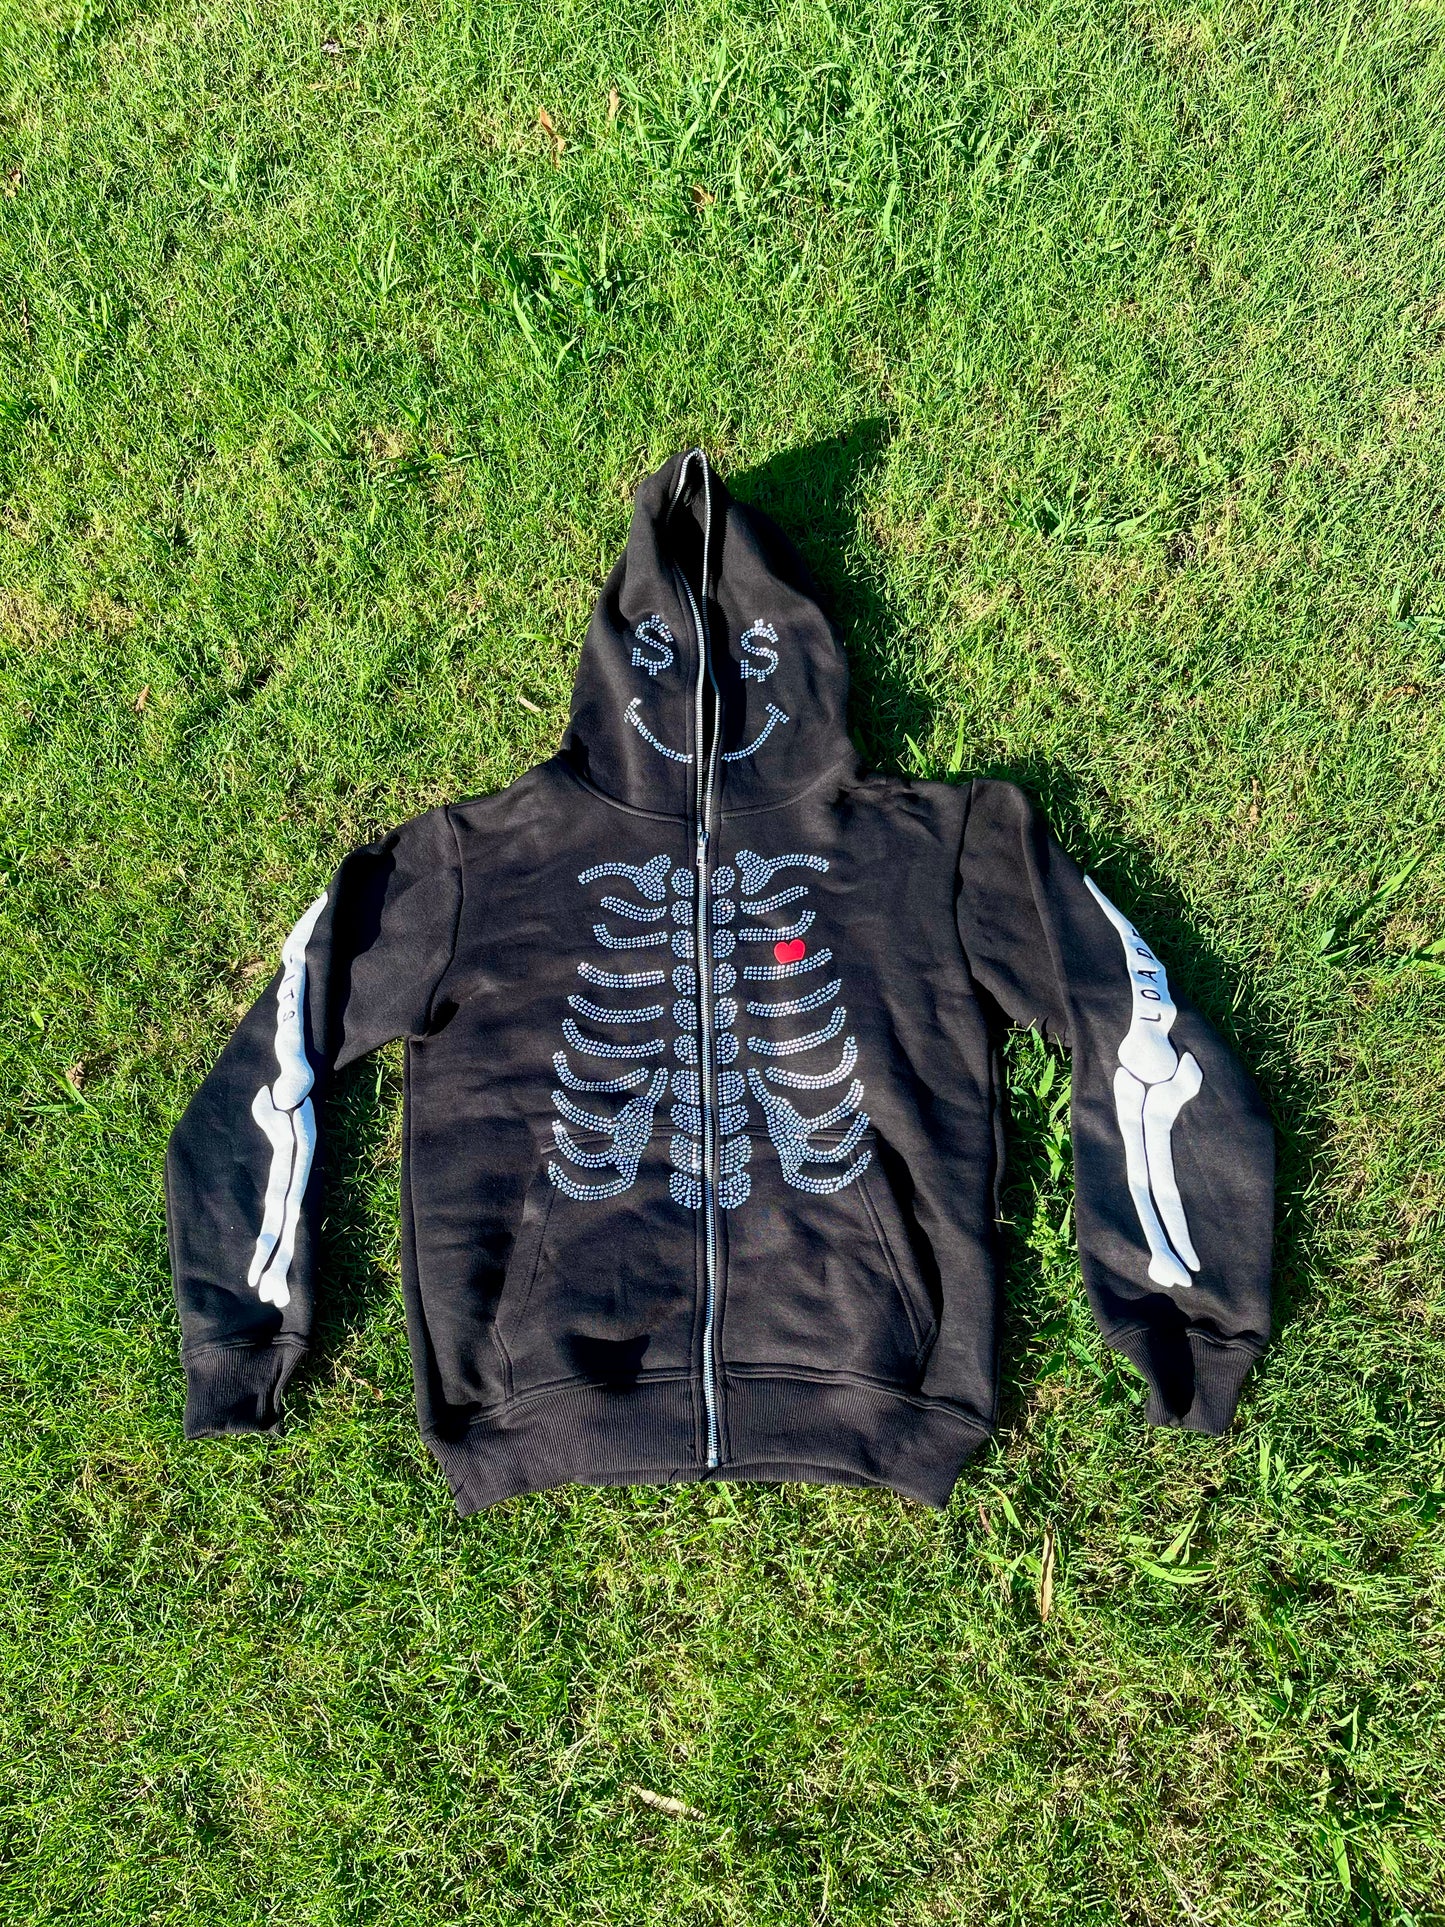 LOADED "It's In My Bones" Full-Zip Jacket